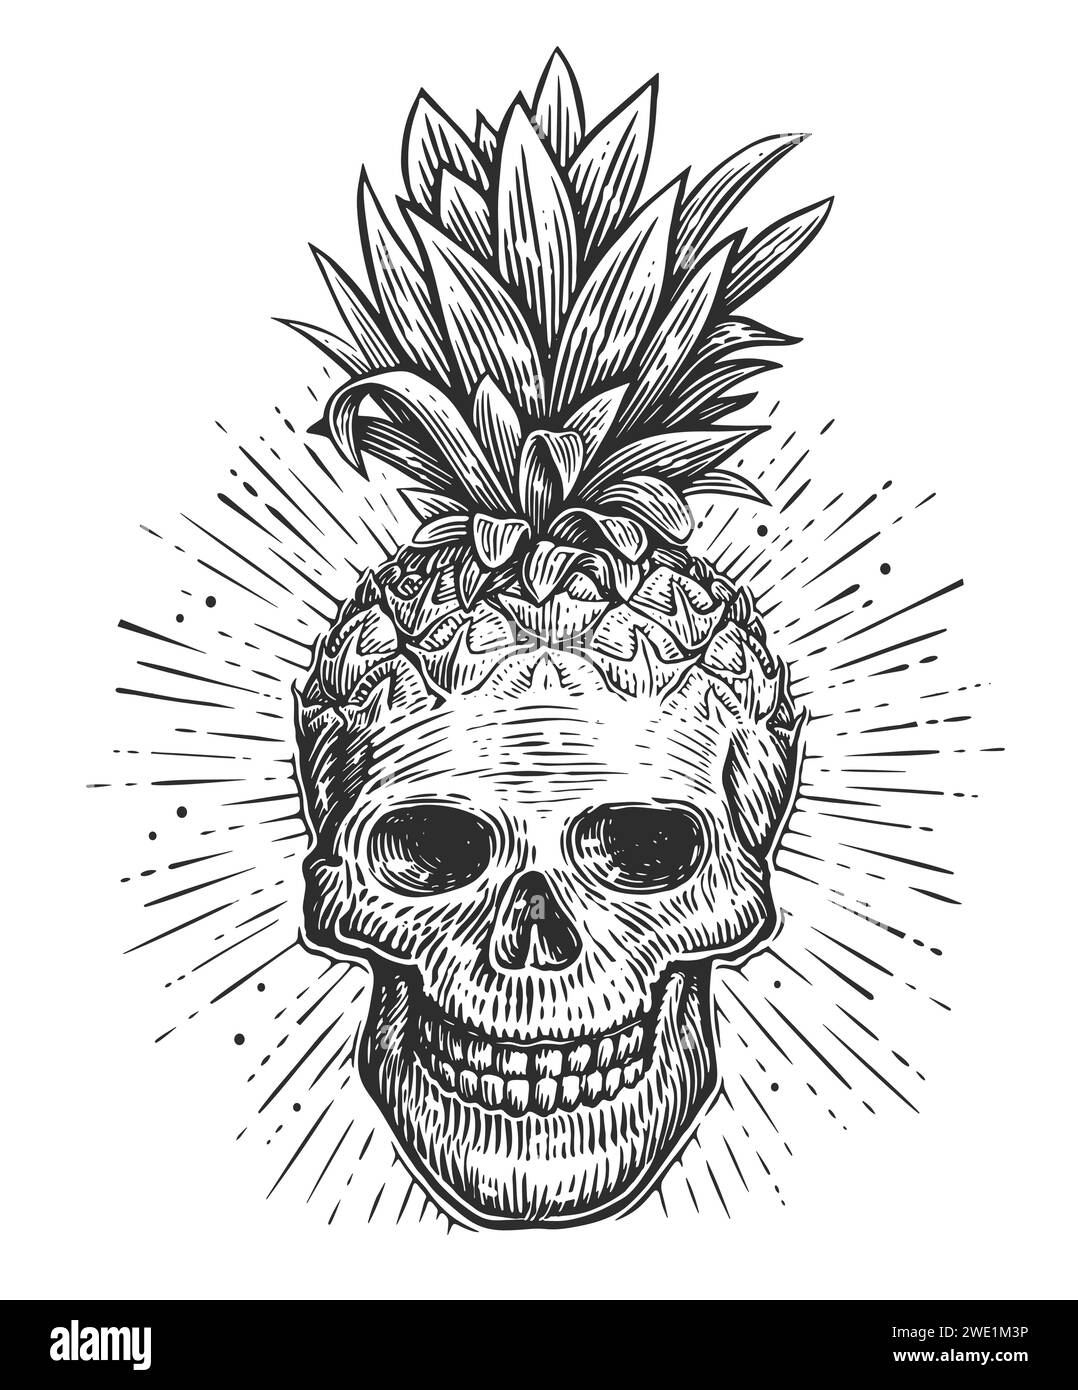 Menschlicher Schädel mit Blättern. Skelettkopf-Skizze. Handgezeichnete kreative Vektor-Illustration Stock Vektor